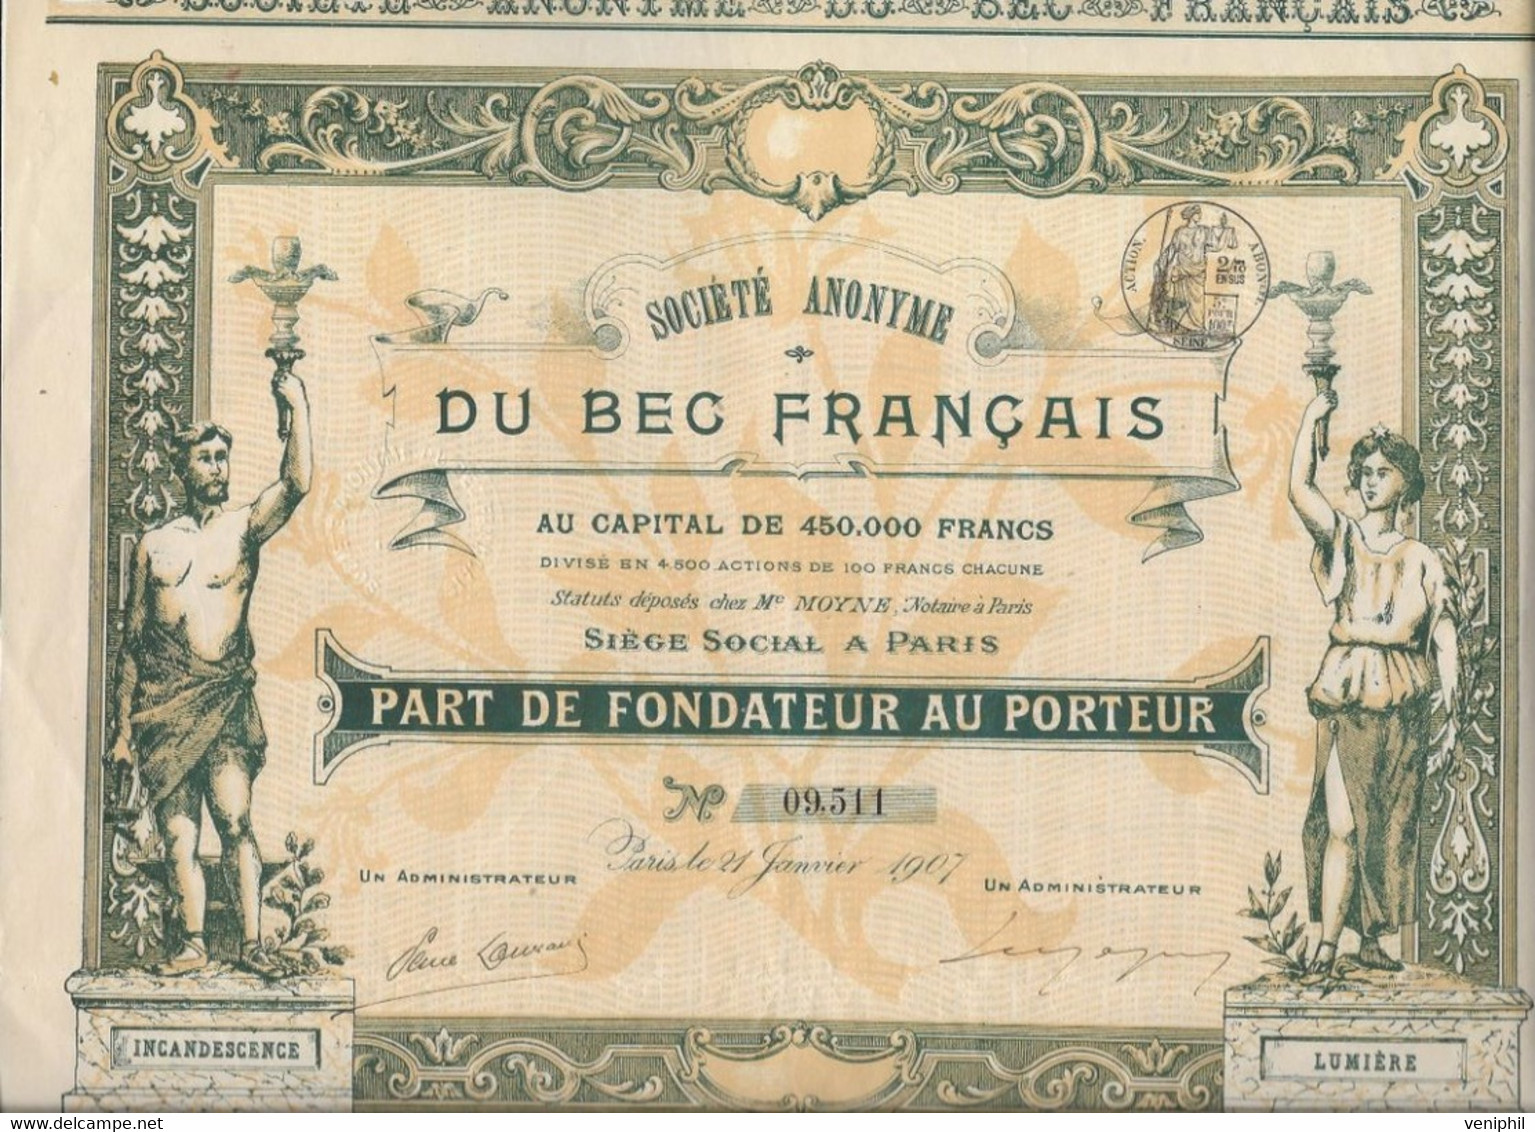 SOCIETE DU BEC FRANCAIS -PART DE FONDATEUR -BELLE ILLUSTRATION - ANNEE 1907 - Electricidad & Gas